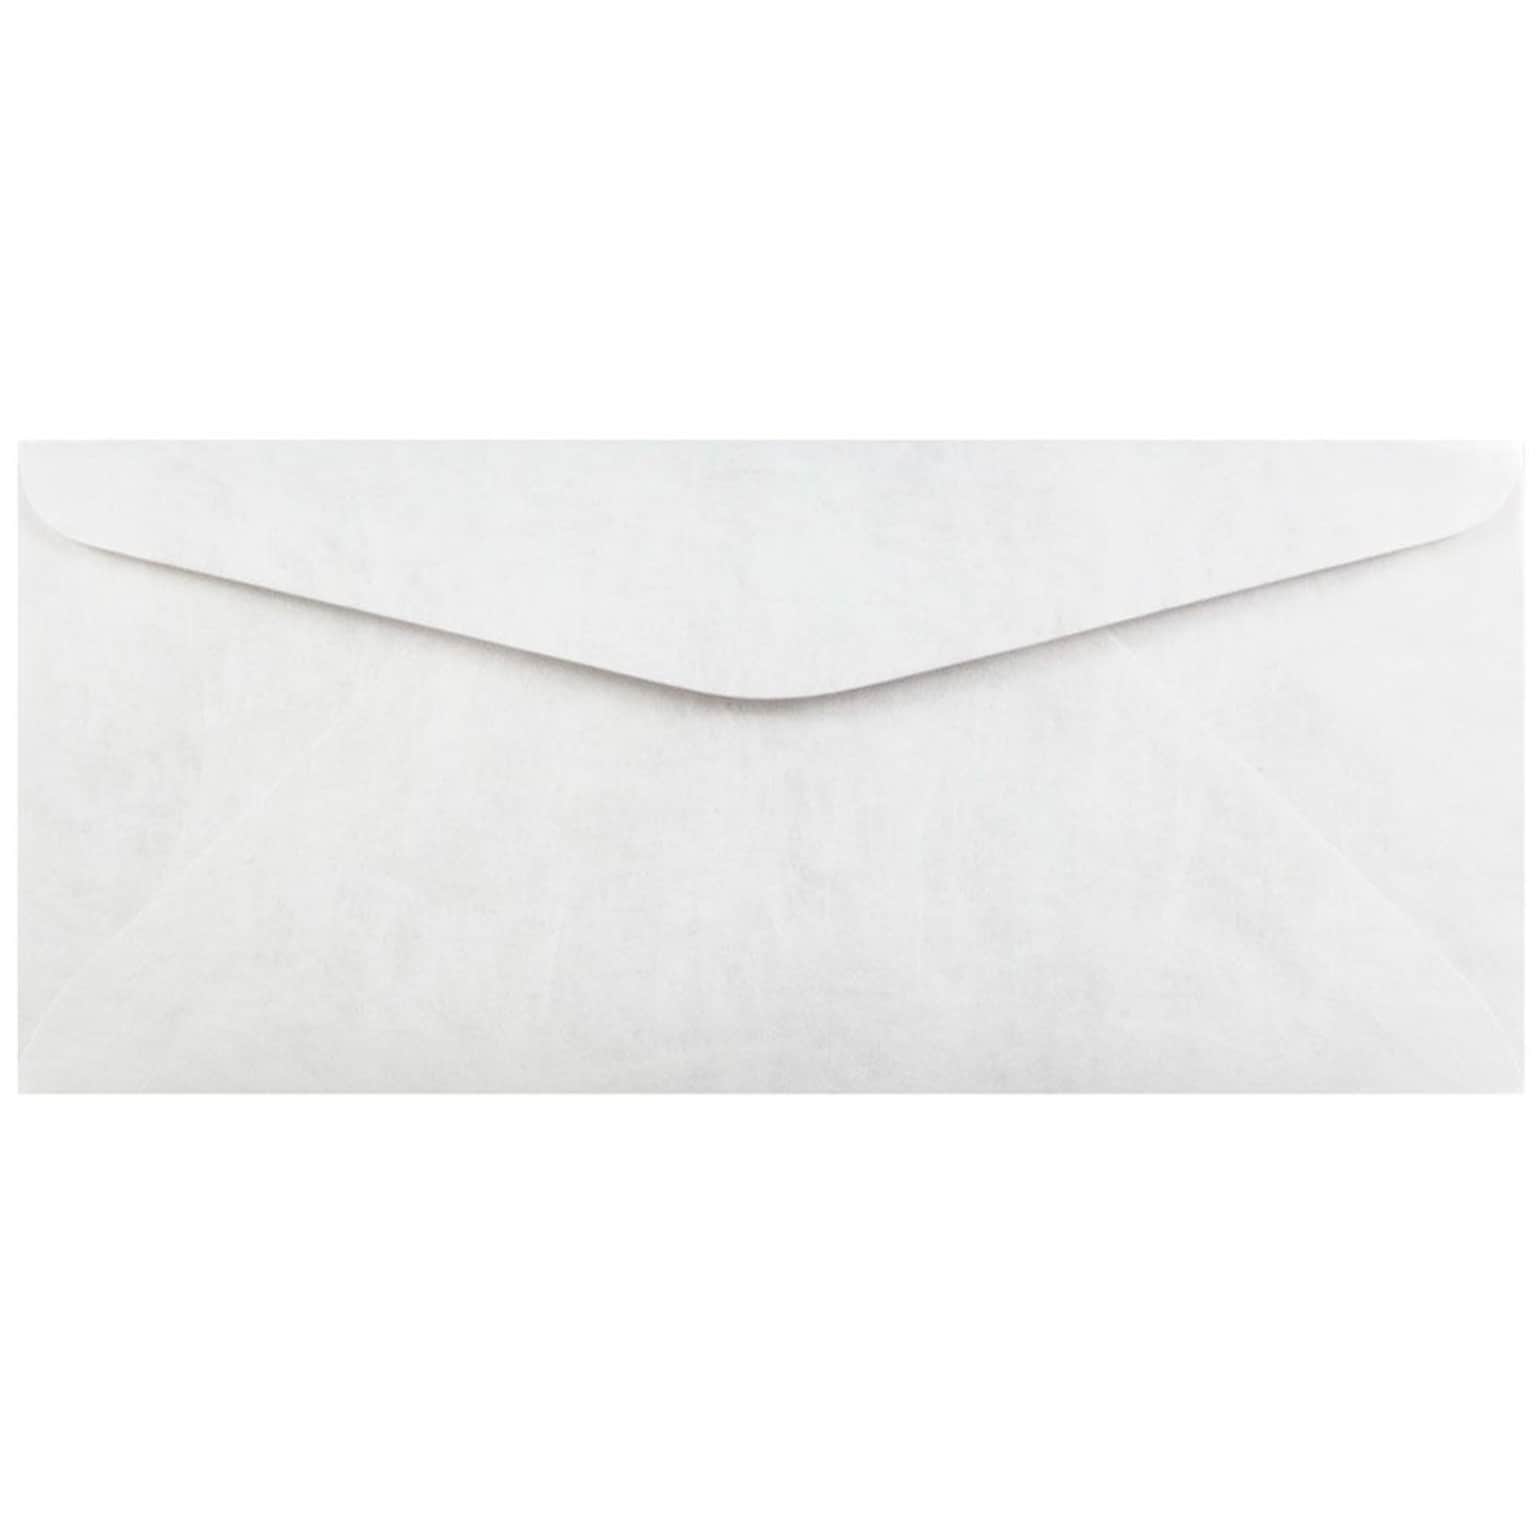 JAM Paper #11 Tear-Proof Tyvek Envelopes, 4.5 x 10.375, White, 50/Pack (2131078C)